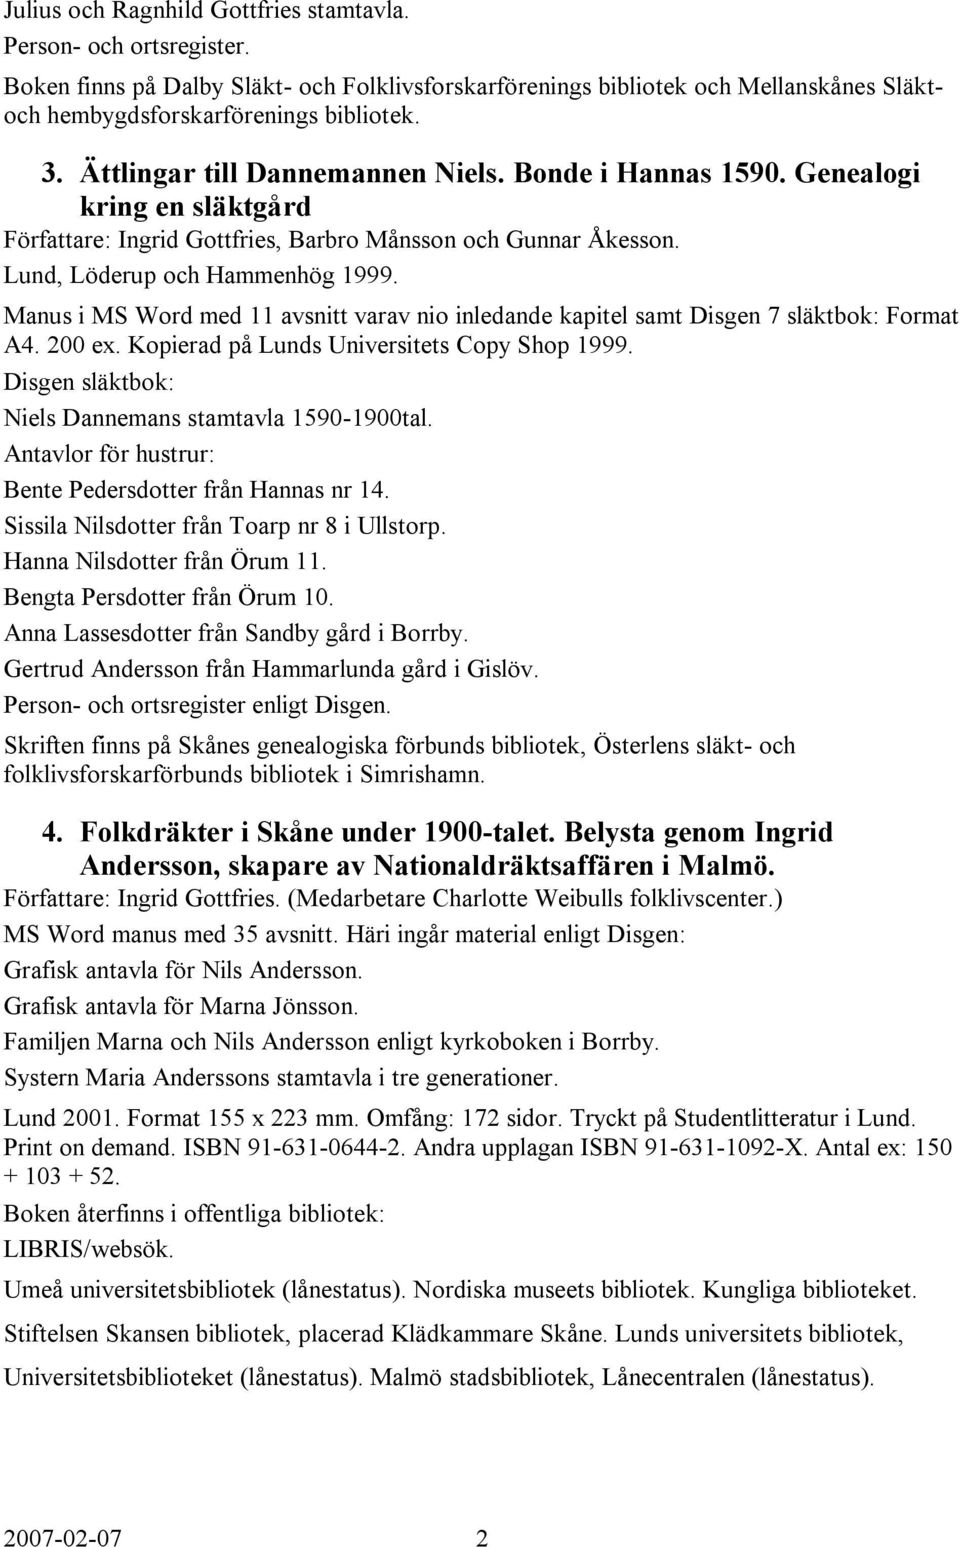 Manus i MS Word med 11 avsnitt varav nio inledande kapitel samt Disgen 7 släktbok: Format A4. 200 ex. Kopierad på Lunds Universitets Copy Shop 1999.